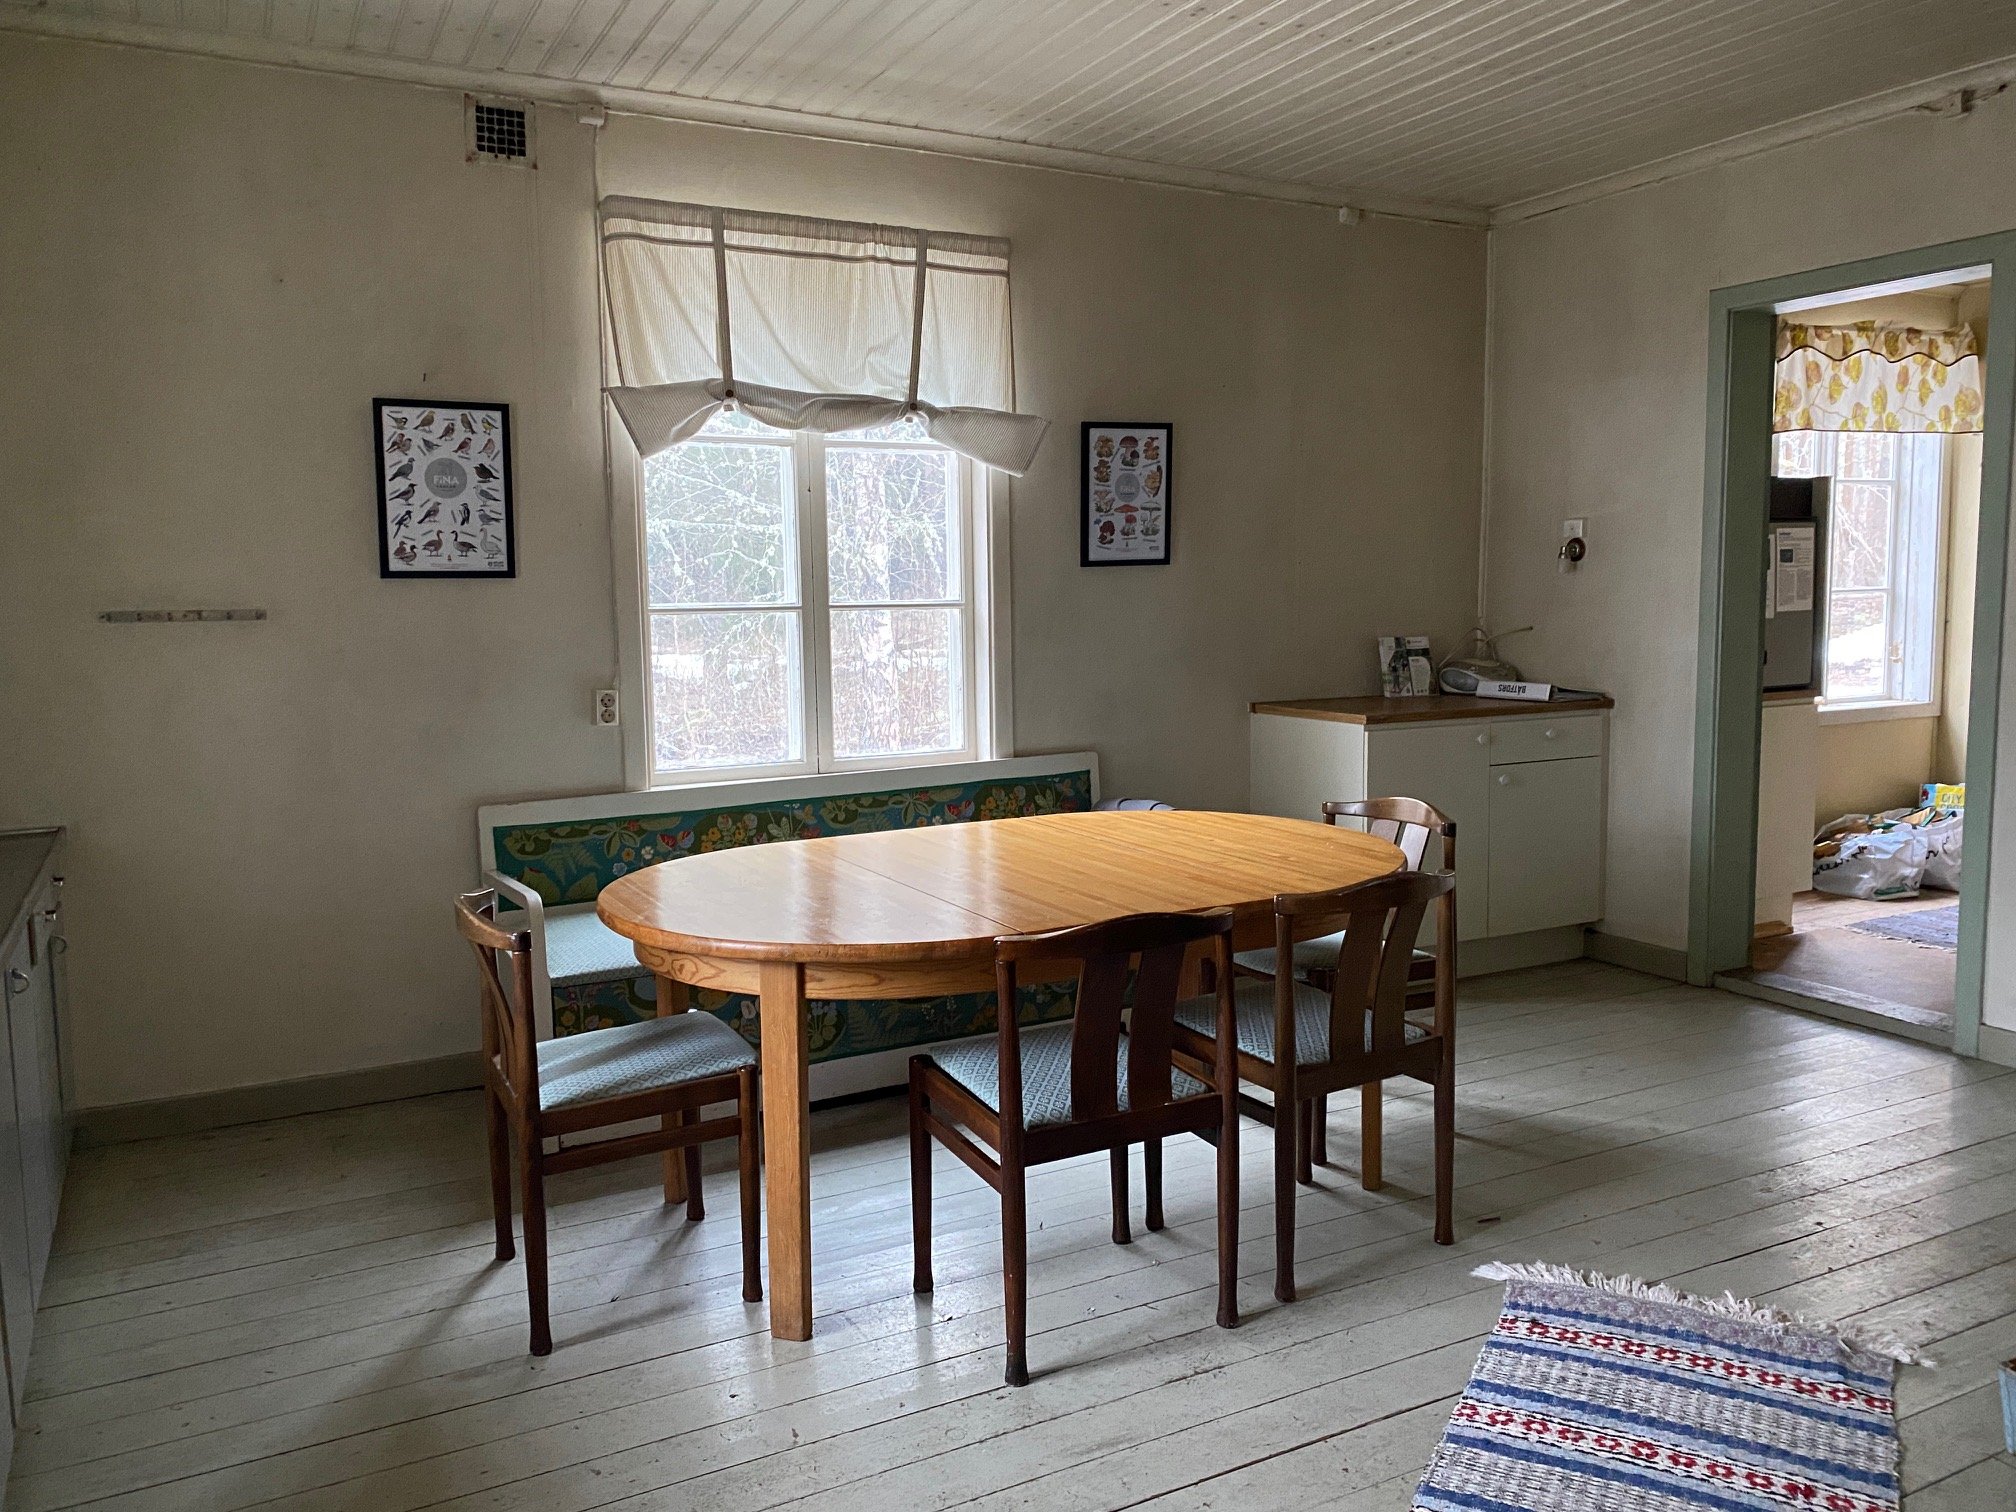 Ett kök inne i ett äldre torp. Ett bord med stolar står mitt i rummet, på golvet ligger en trasmatta och det finns ett par köksbänkar i rummet. På ena väggen hänger två tavlor.